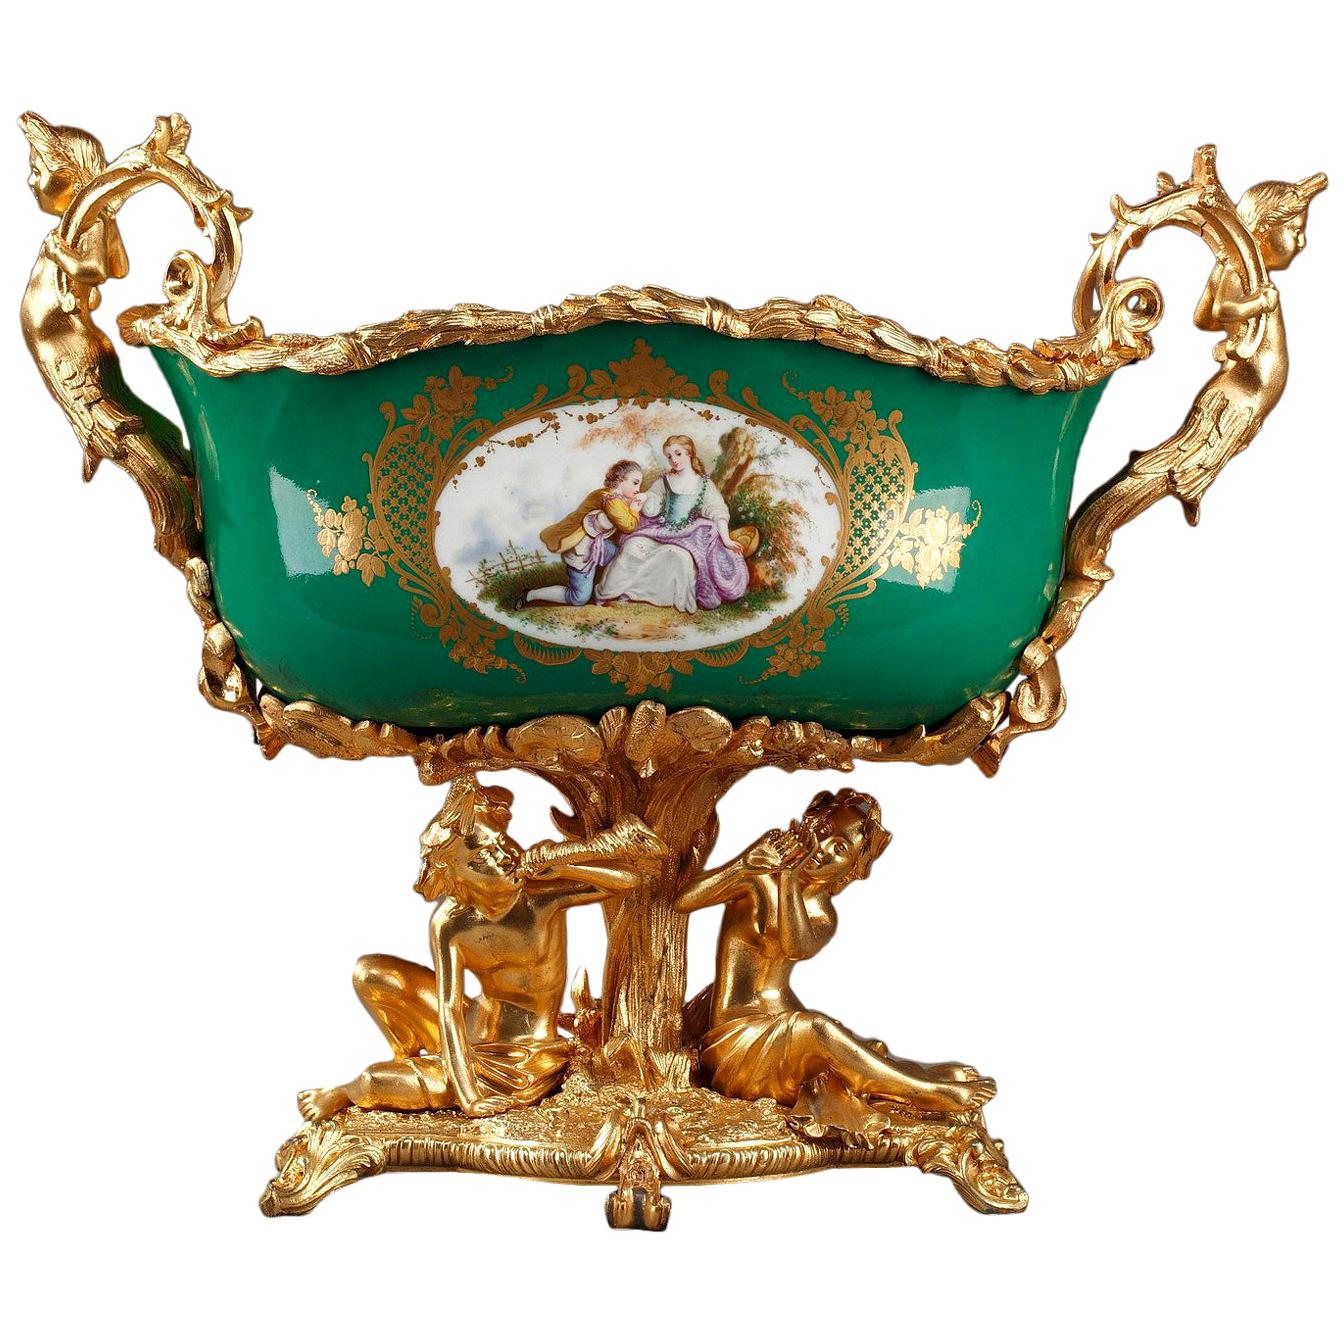 Jardinire aus Porzellan mit vergoldeter Bronze auf grünem Grund aus der Zeit von Napoleon III.